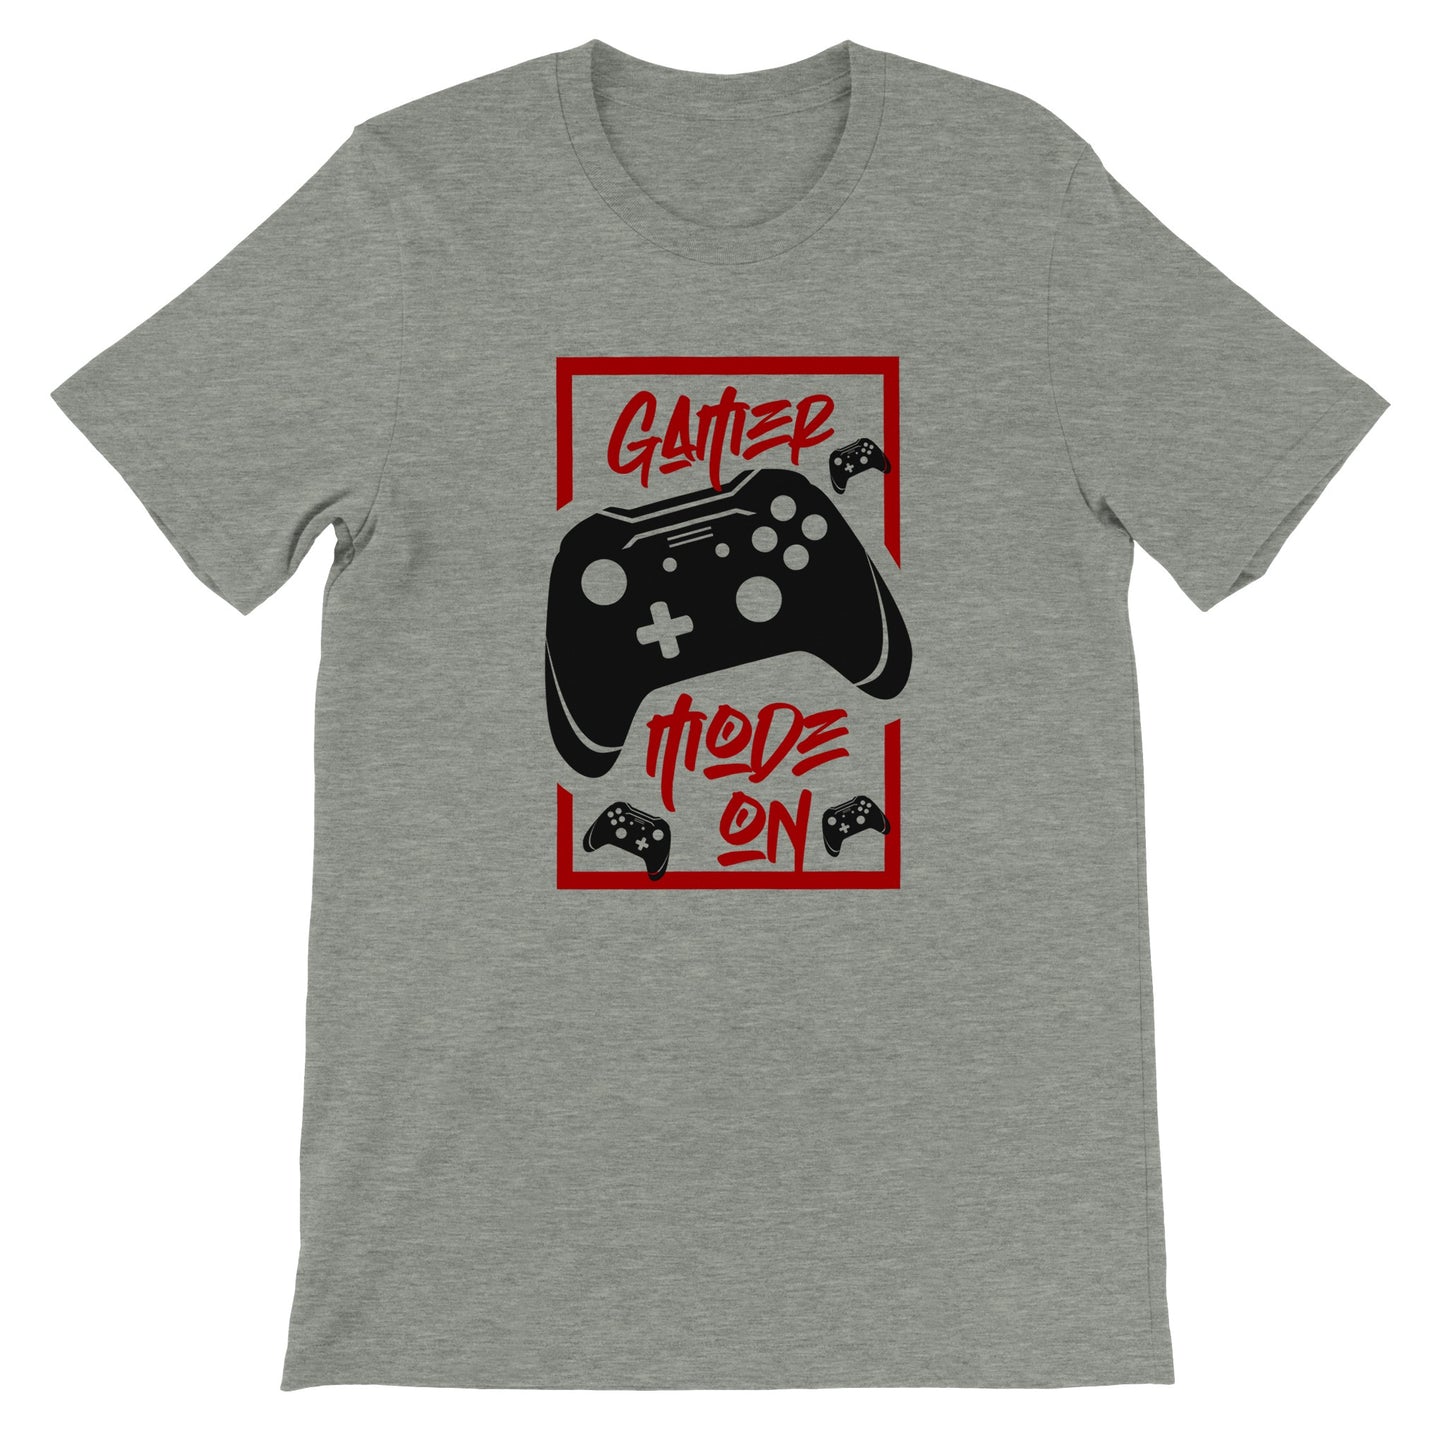 Gaming T-shirts - Gamer Mode On - Premium Unisex T-shirt